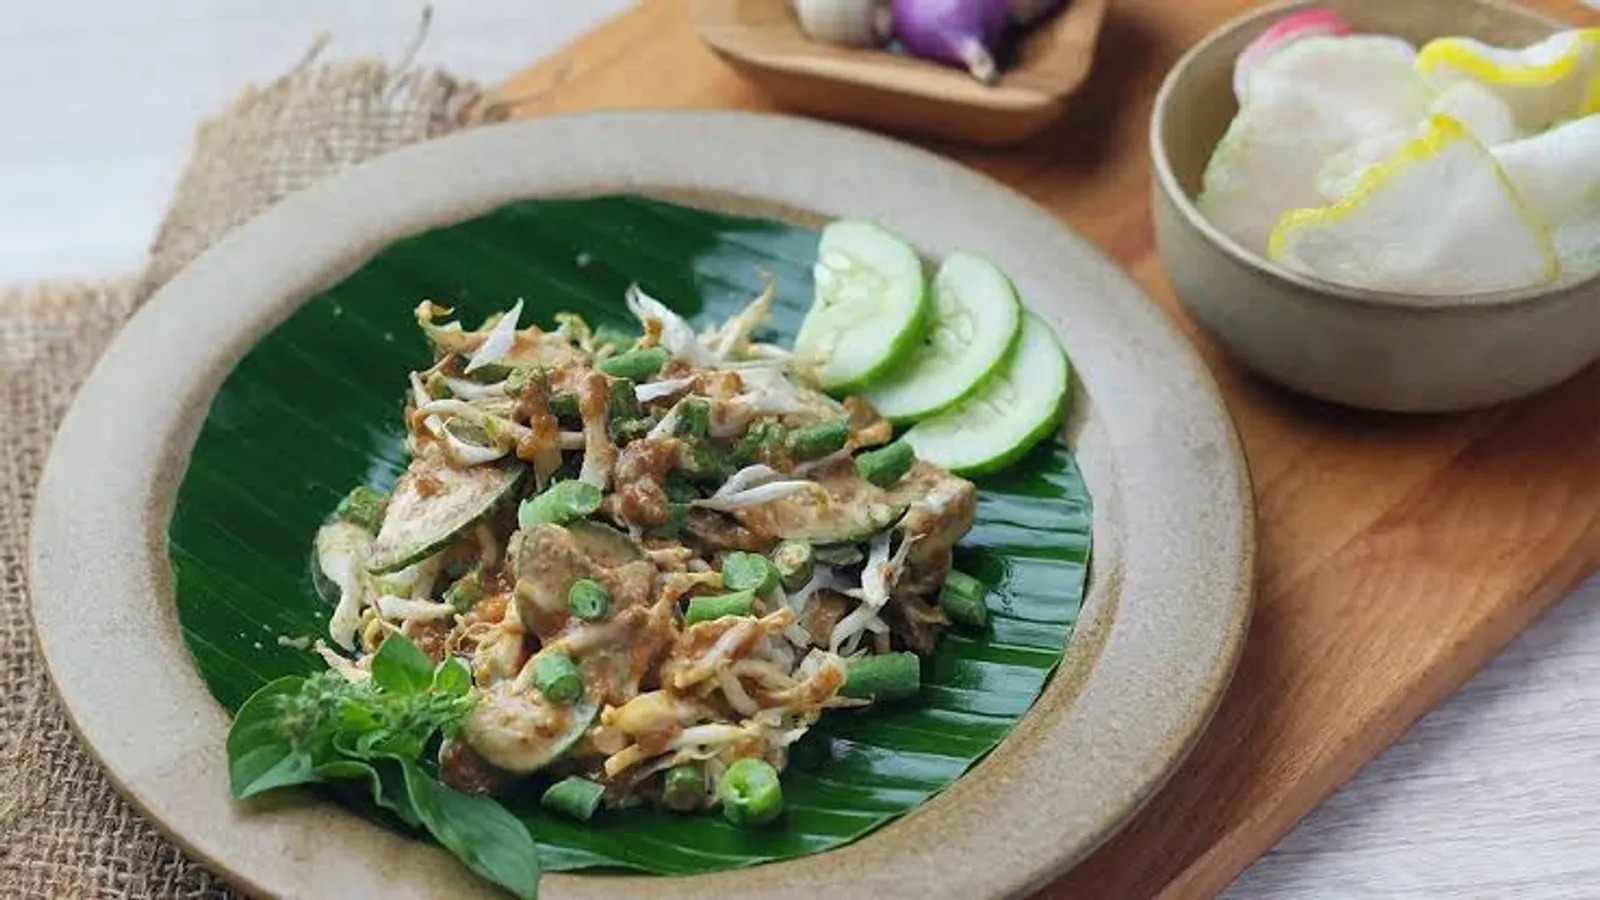 Resep Karedok Khas Sunda, Sajian Salad Sayur Khas Jawa Barat